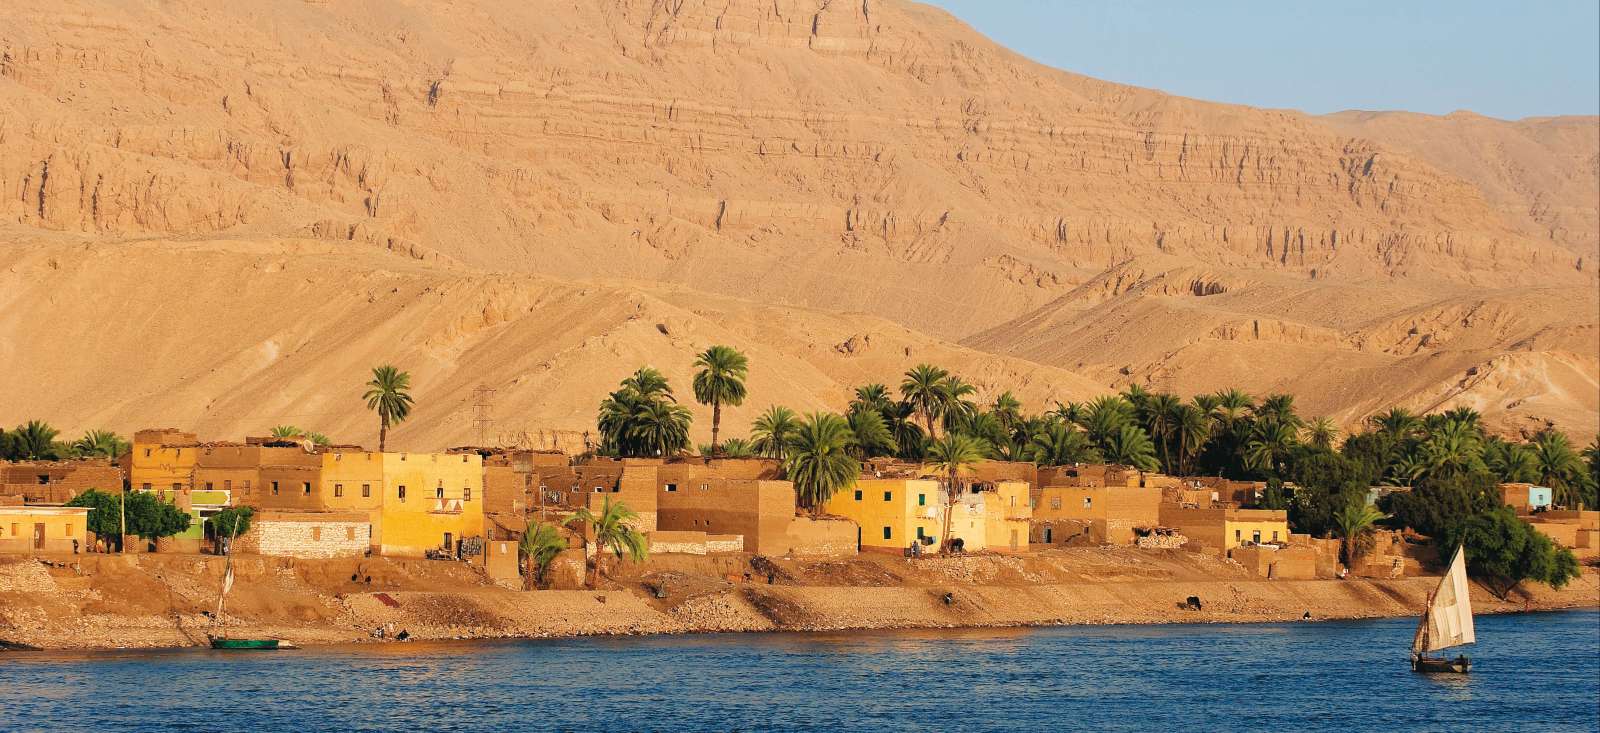 Image Rando et felouque sur le Nil